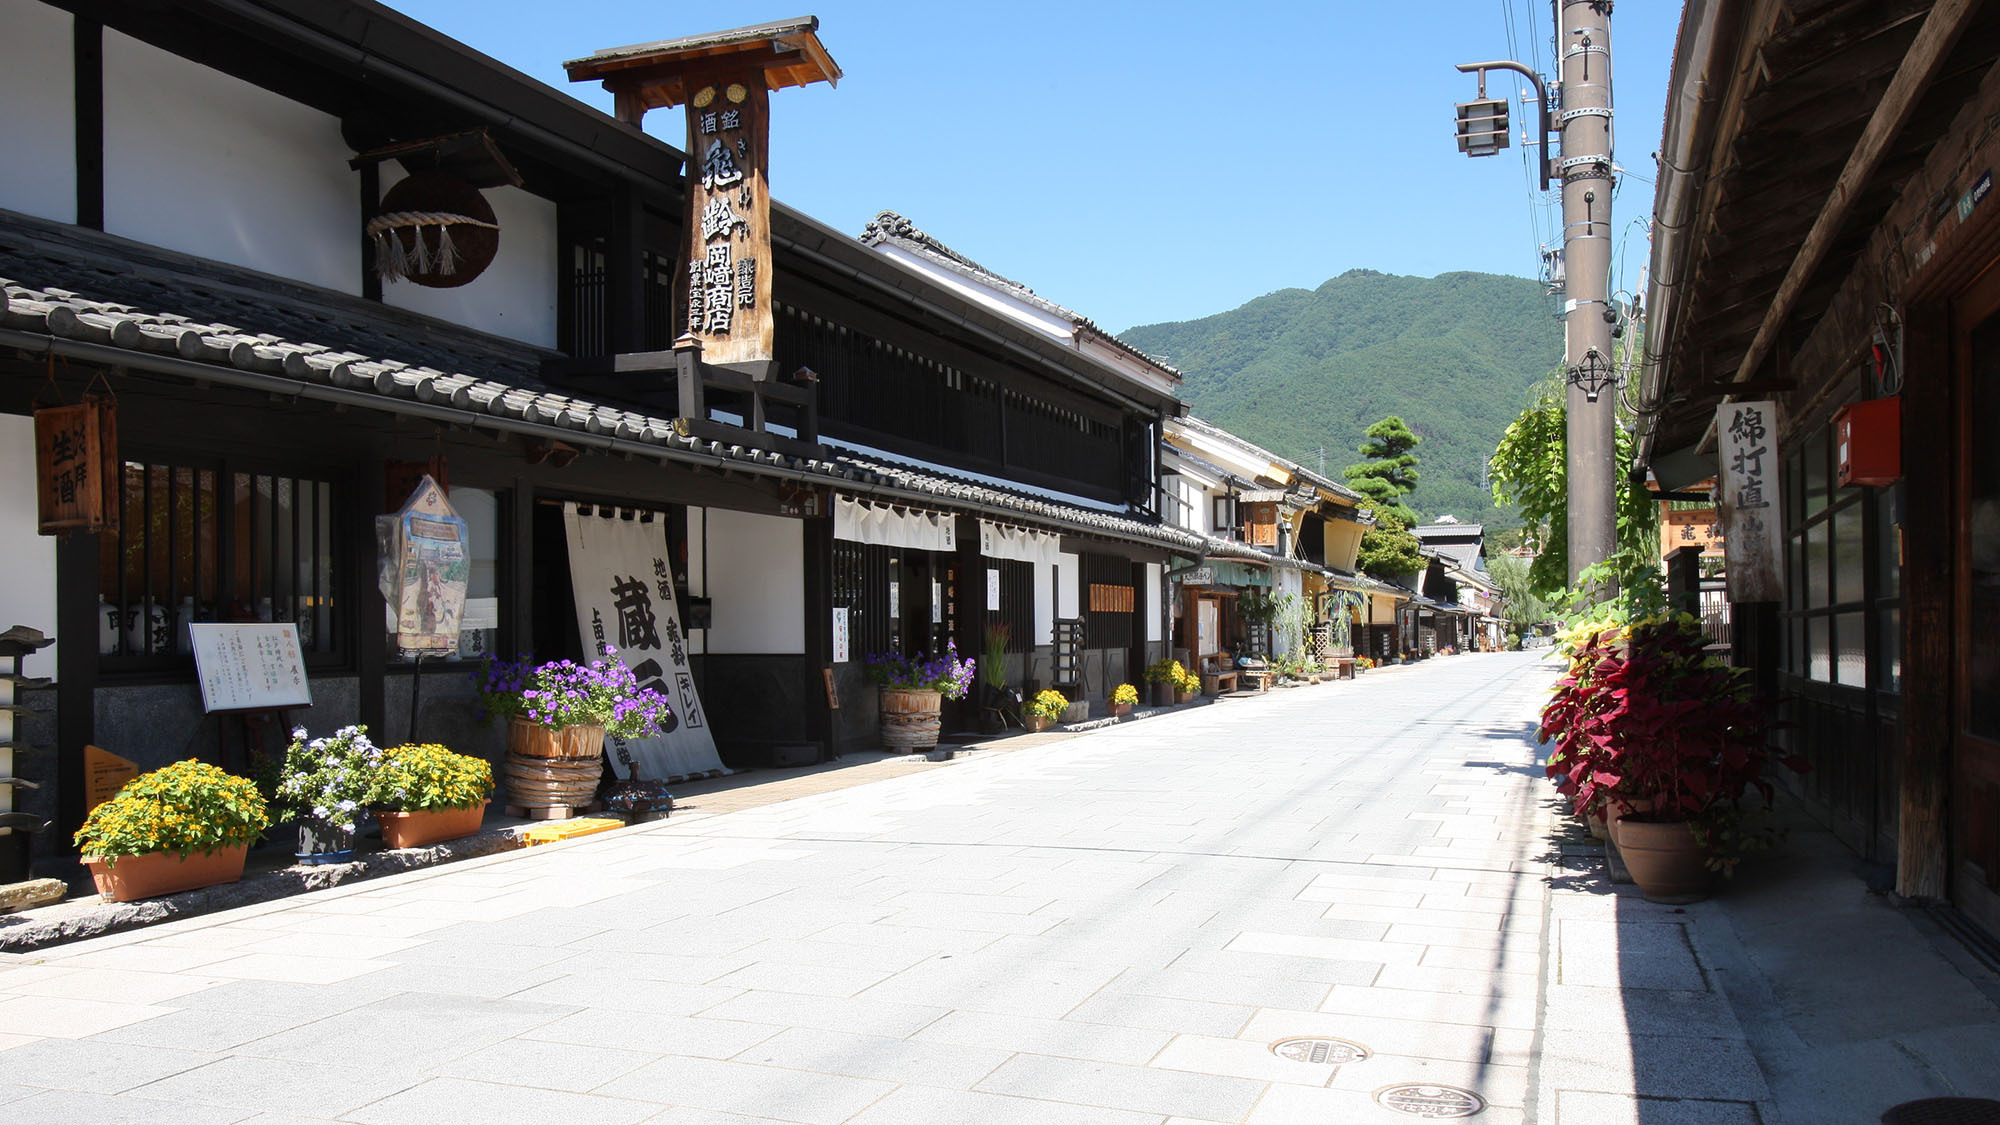 ・【北国街道・柳町】旧北国街道沿いの家並みが残る通り。信州上田の名物・銘品を扱う店舗が並びます